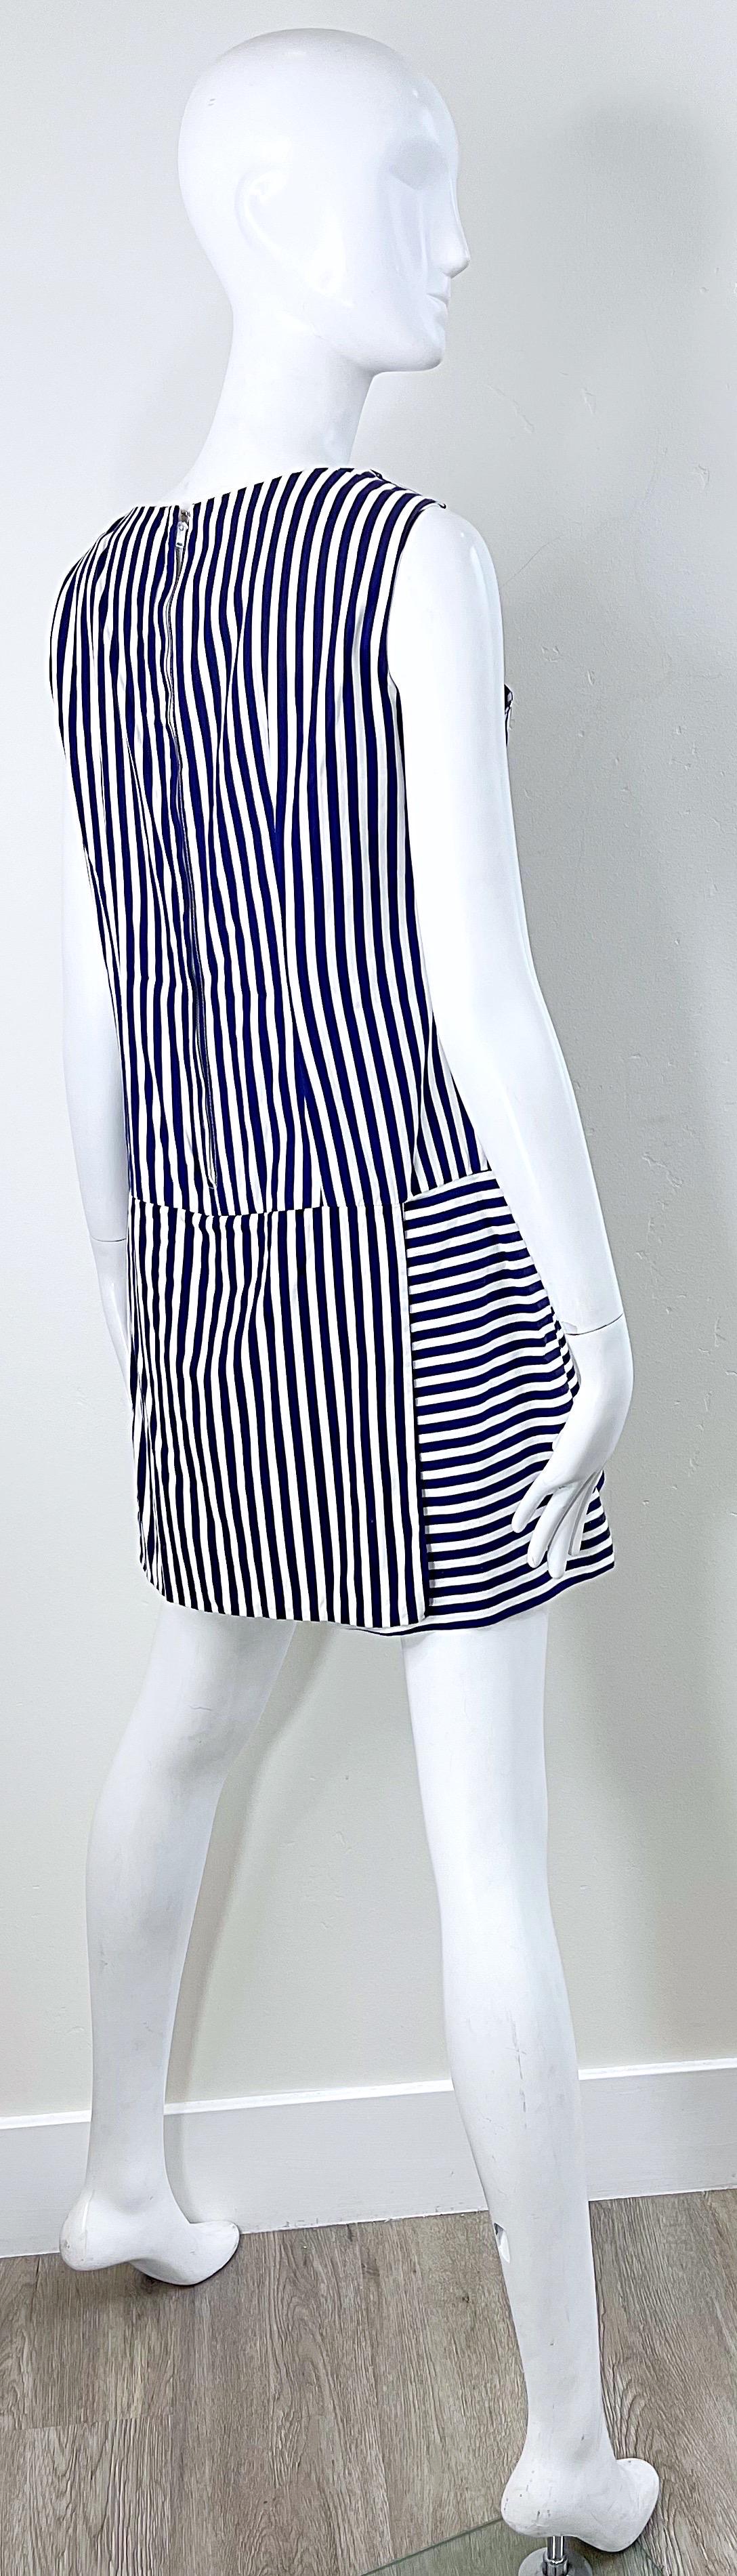 1960s Romper Large Size Navy + White Striped Cotton Vintage 60s Skort Dress For Sale 4